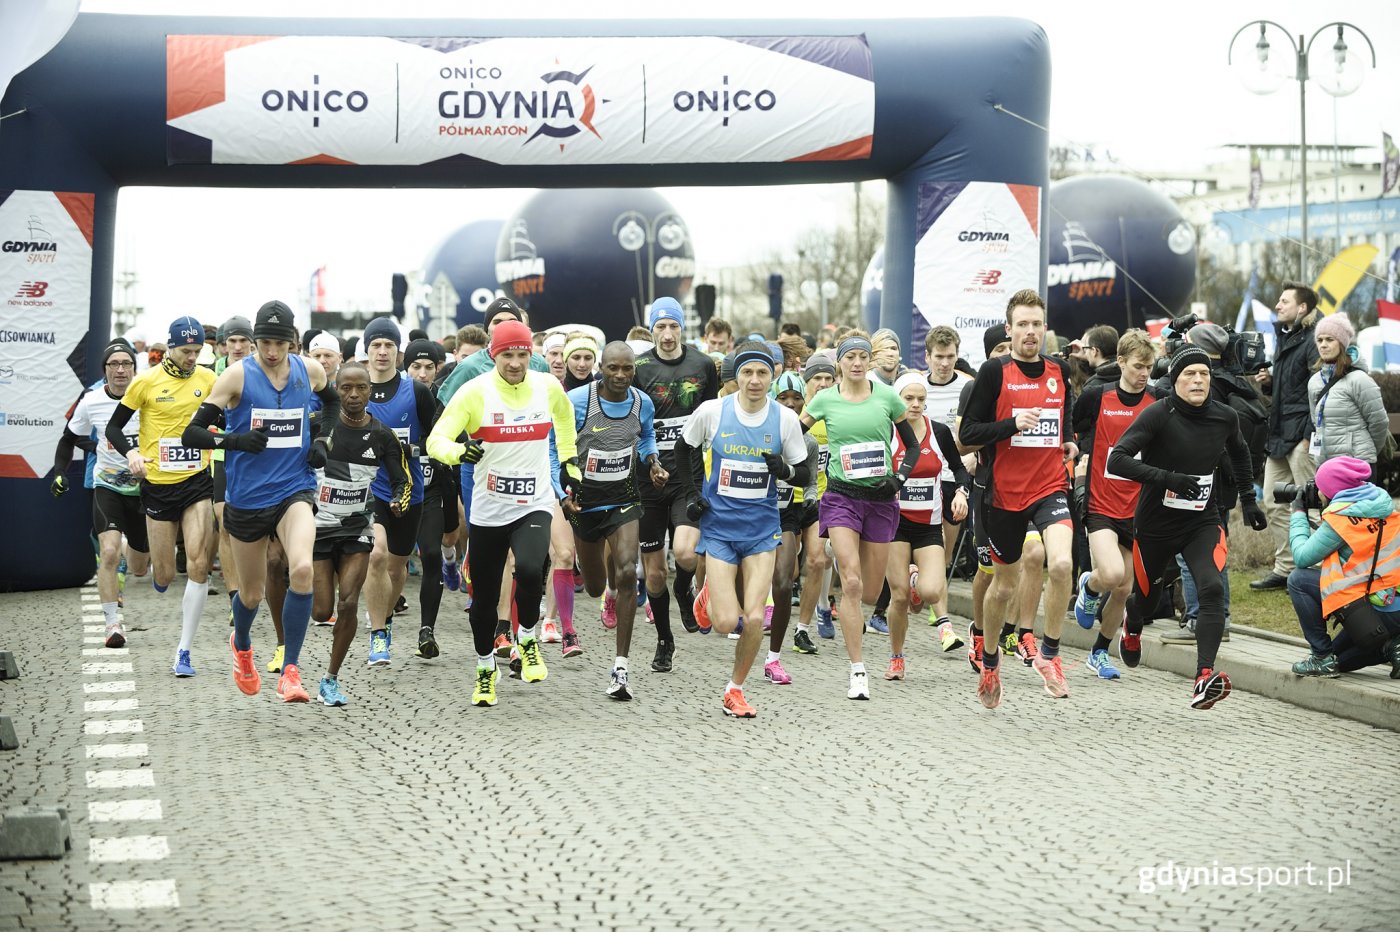 Organizatorzy planują kilkukrotnie pobić frekwencję z zeszłorocznej edycji Onico Gdynia Półmaratonu, fot. gdyniasport.pl